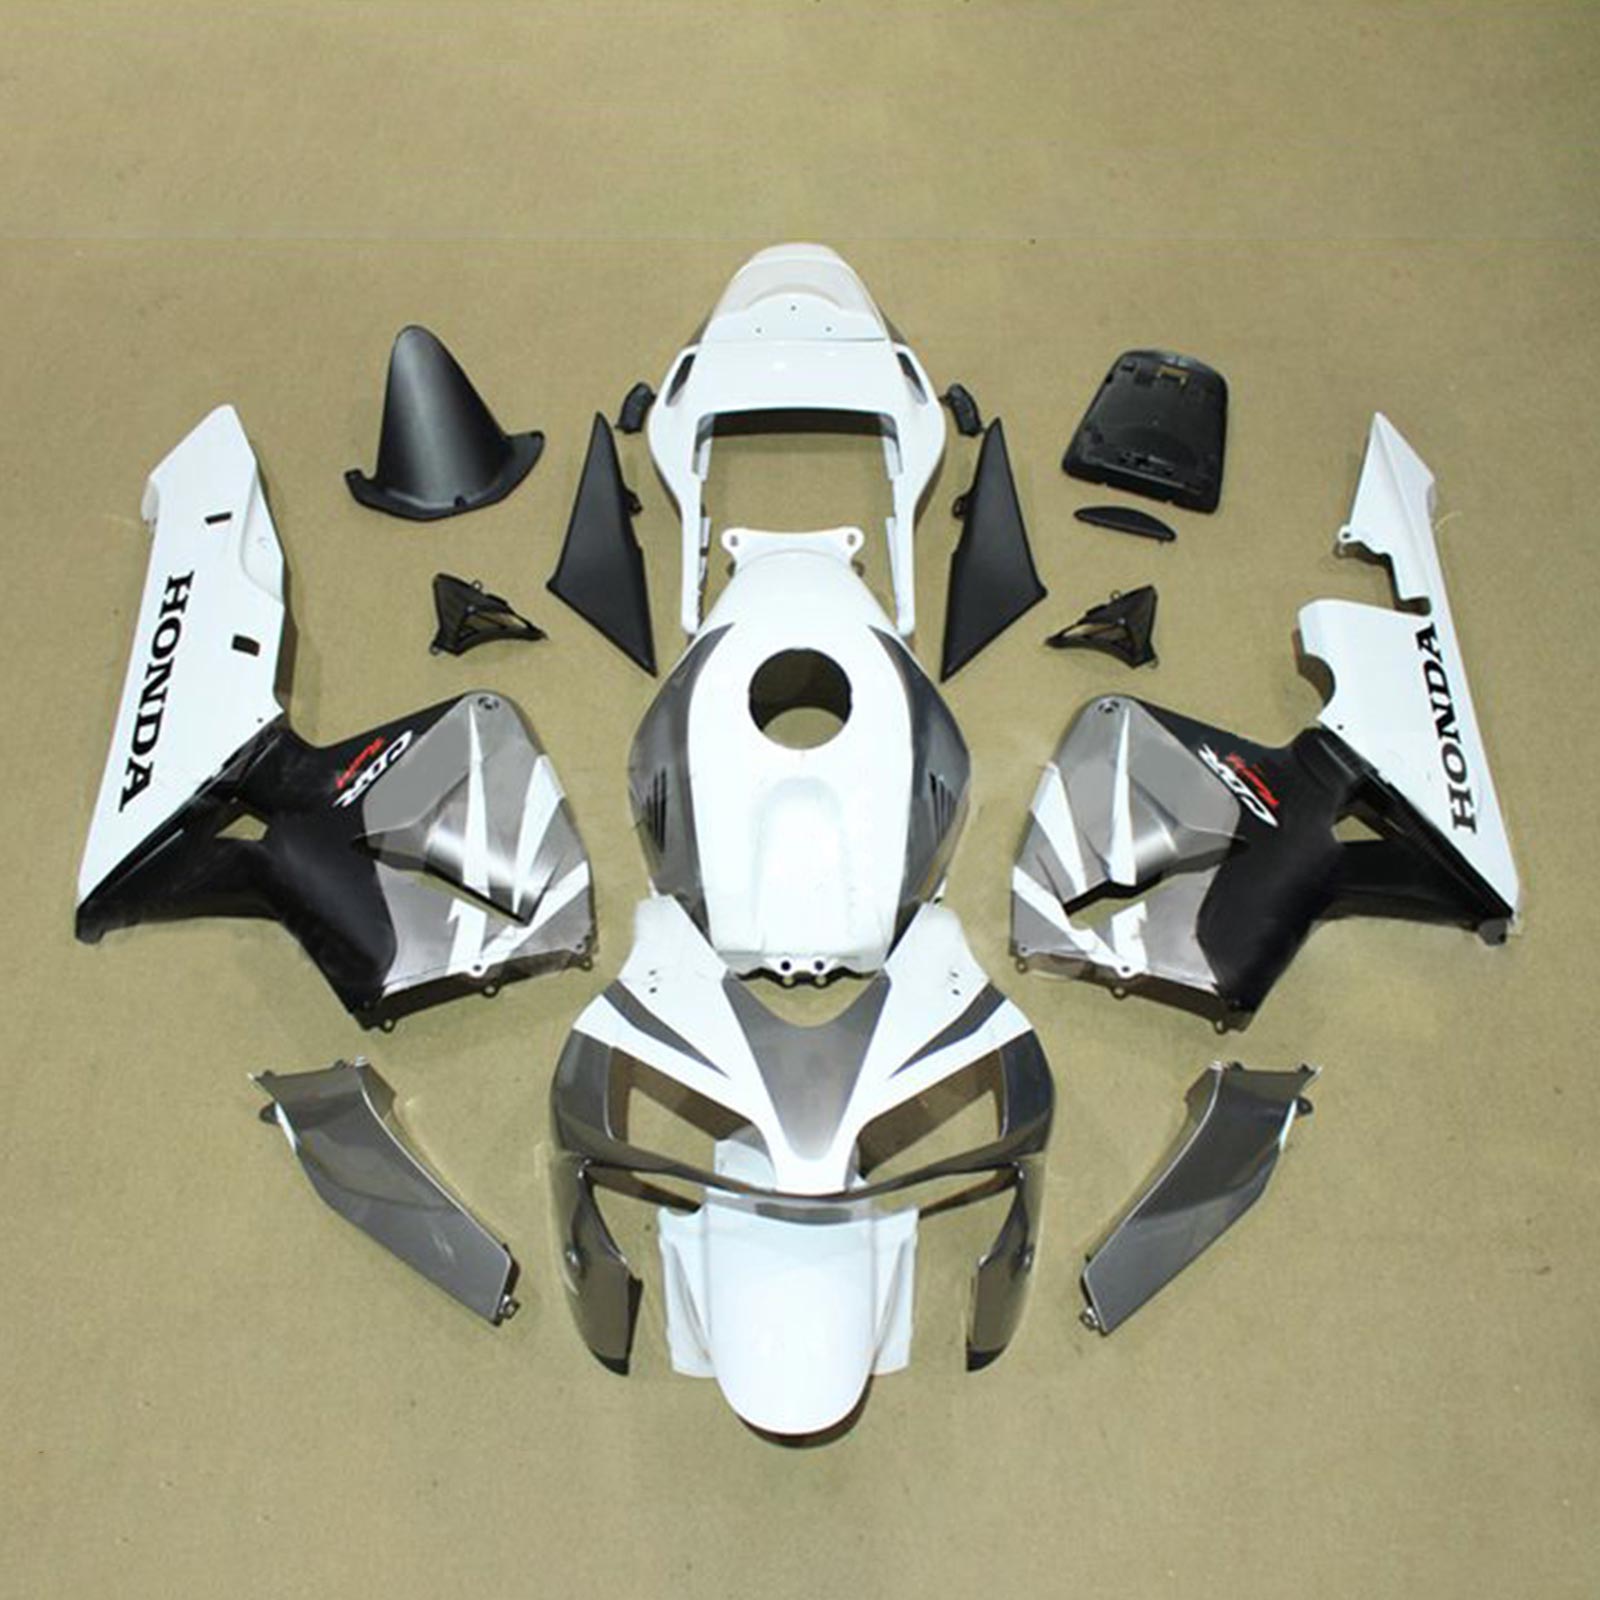 Kit carena Amotopart 2003-2004 Honda CBR600RR bianco nero